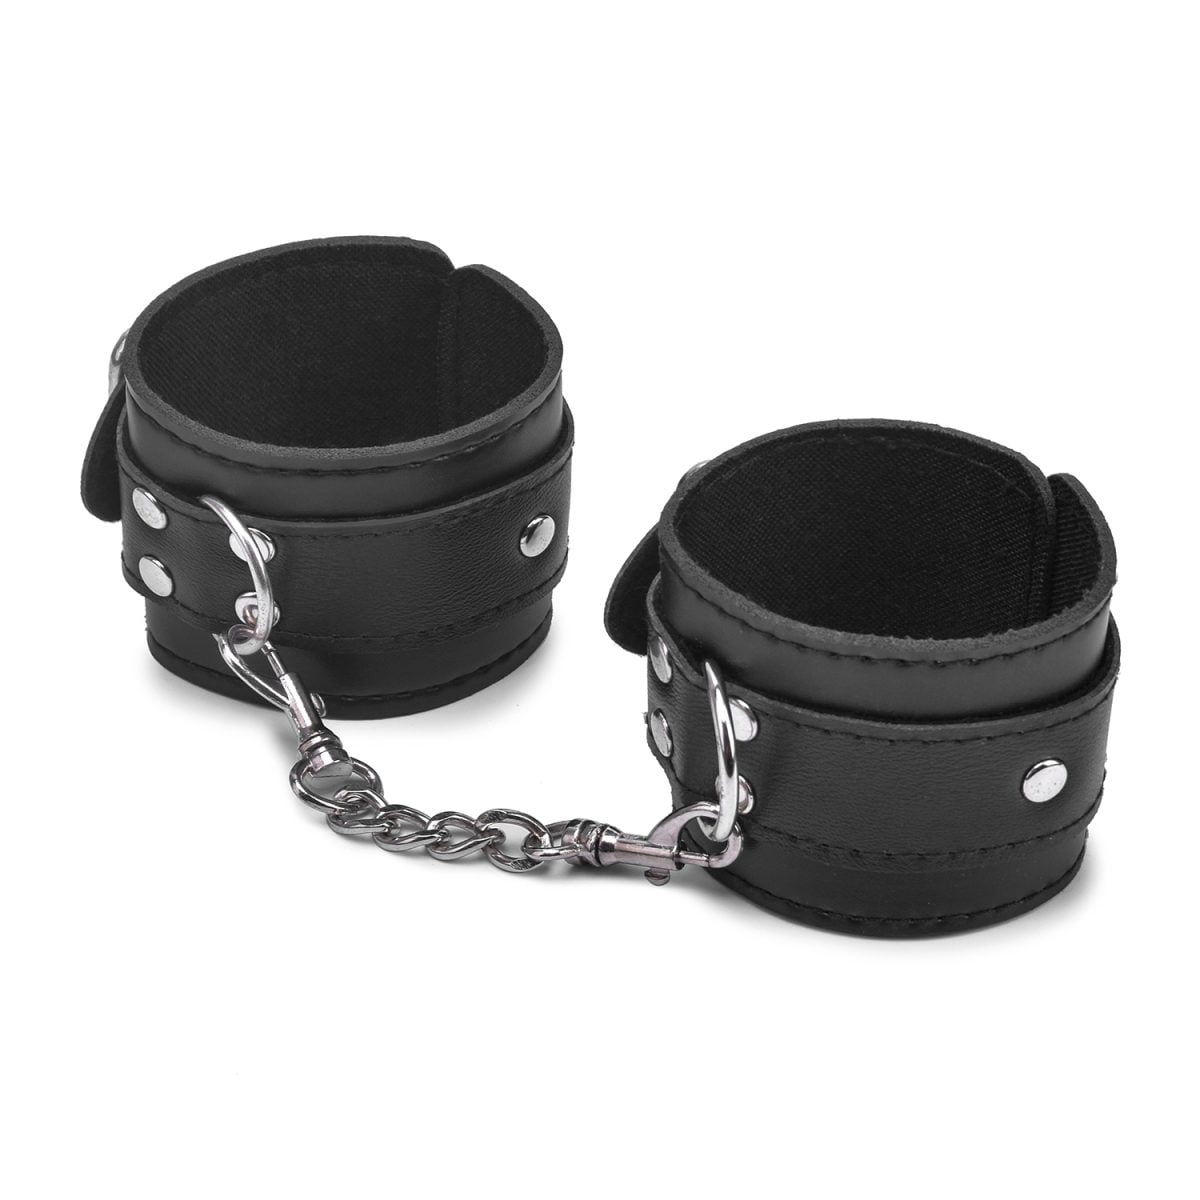 Fine Sport BDSM Sex Bound Leather Handcuffs | Restraints & Handcuffs YDK8010 BDSM Sex Bound Leather Handcuffs 4